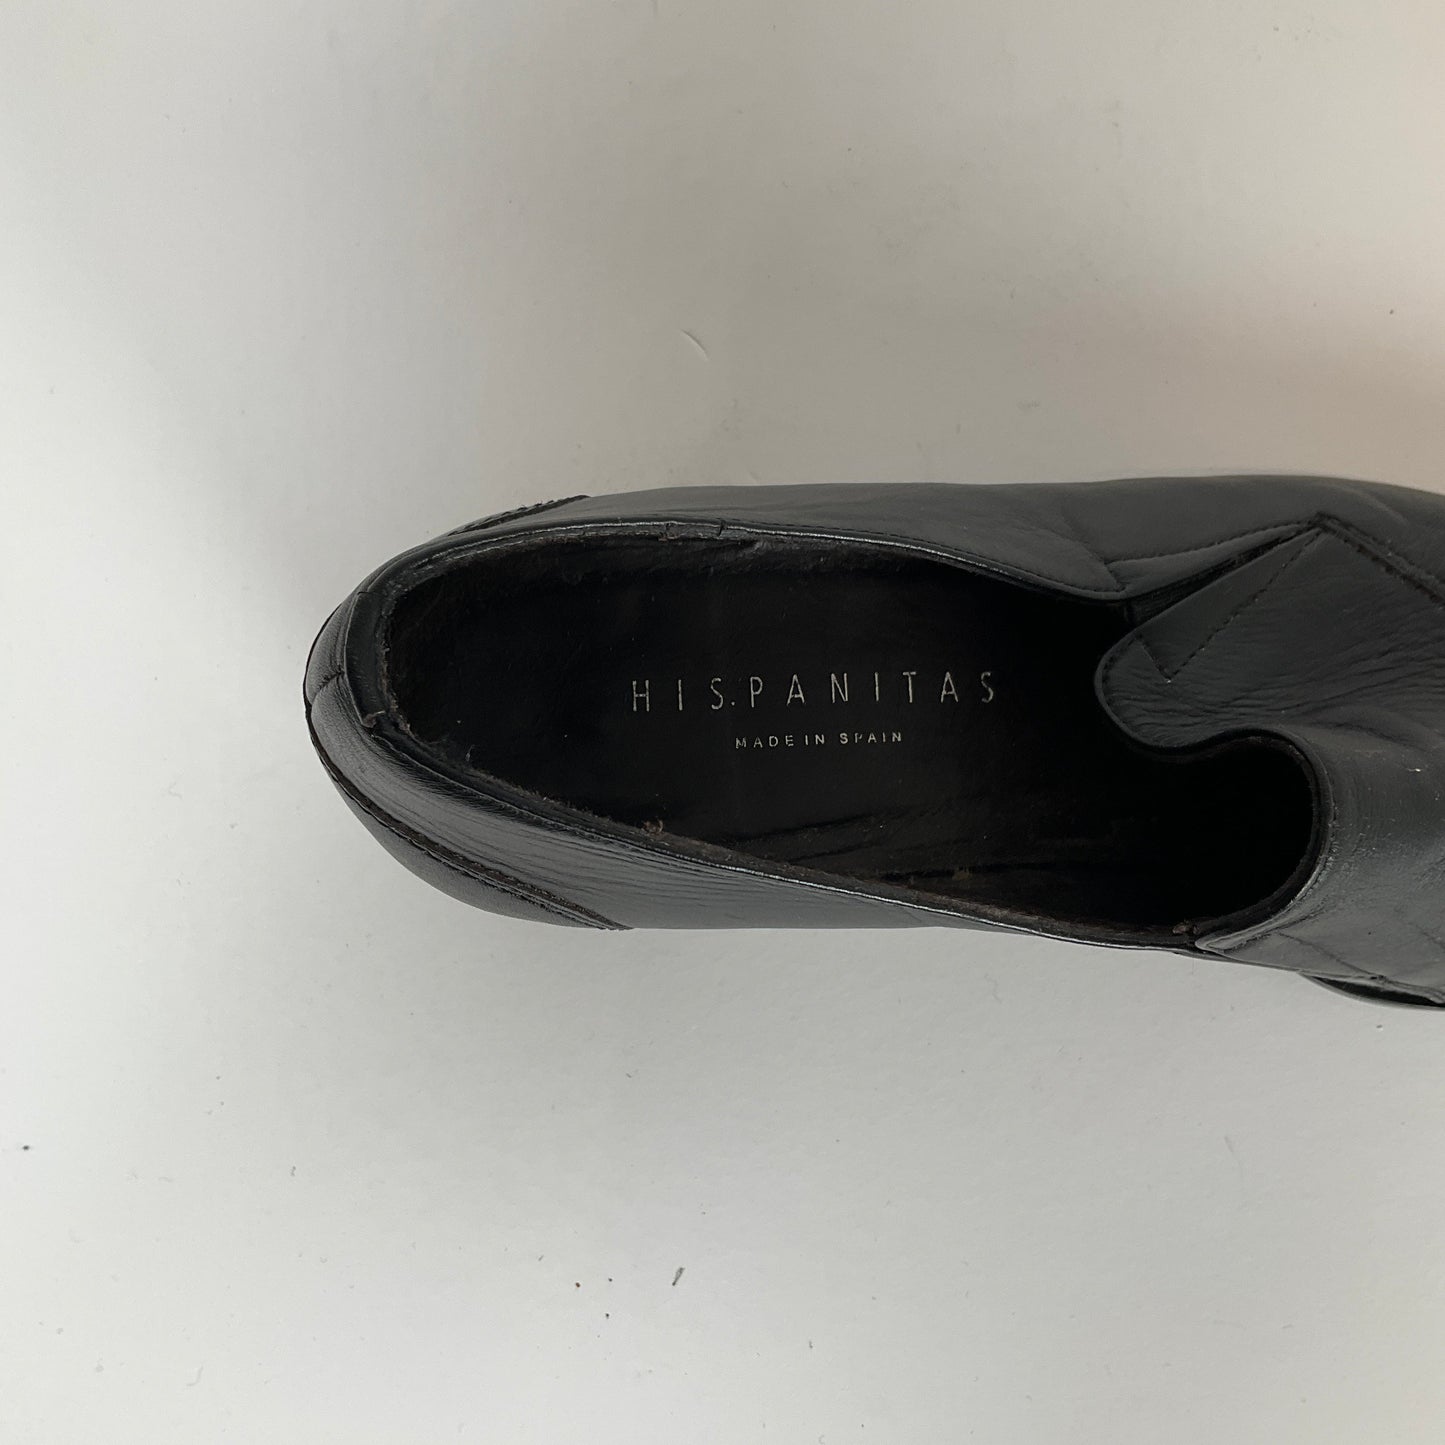 Hispanitas - Black Low Heels Size 36 Shoes